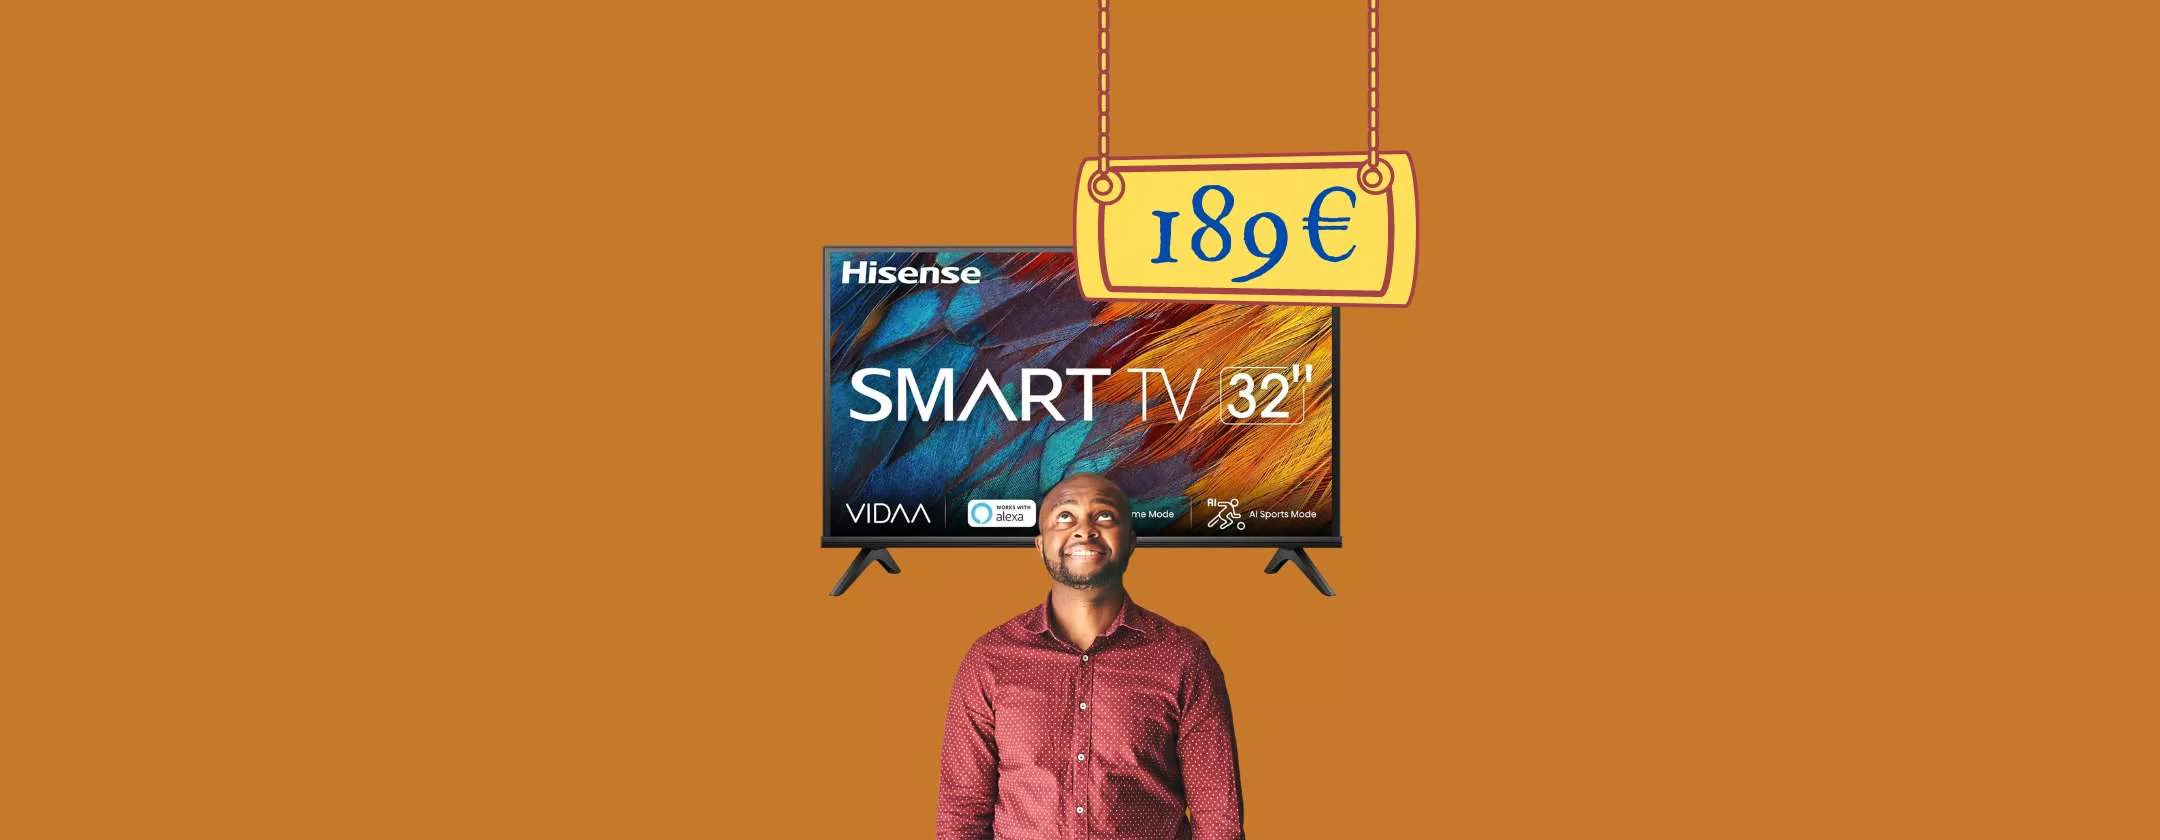 Smart TV Hisense A4K 32 a soli 189€: LUSSO su MediaWorld